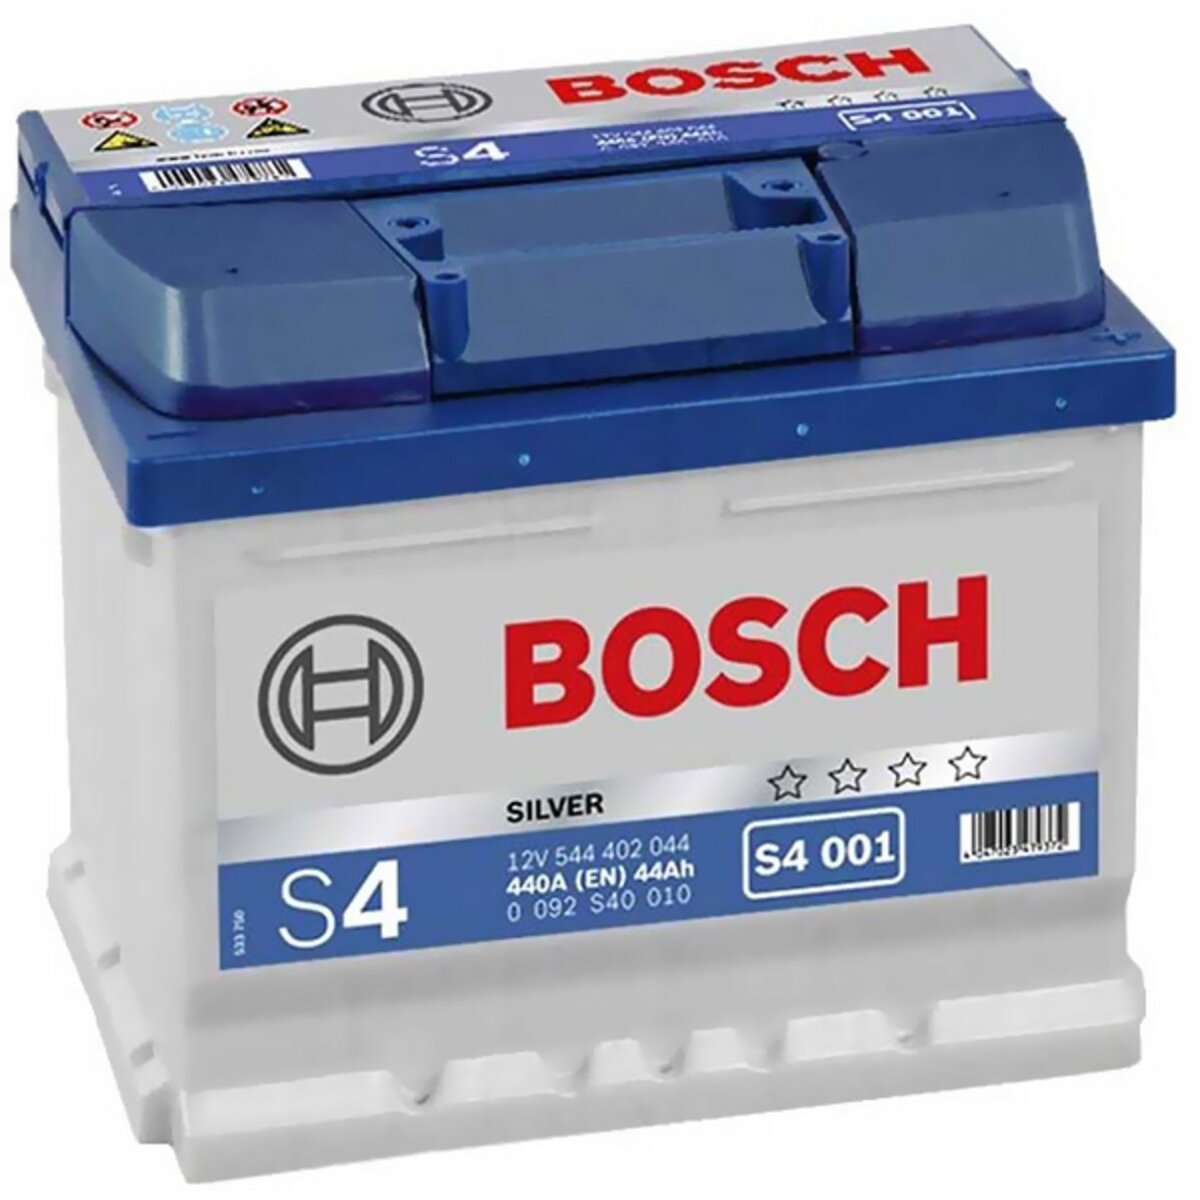 BOSCH Batterie Bosch S4001 44Ah 440A BOSCH